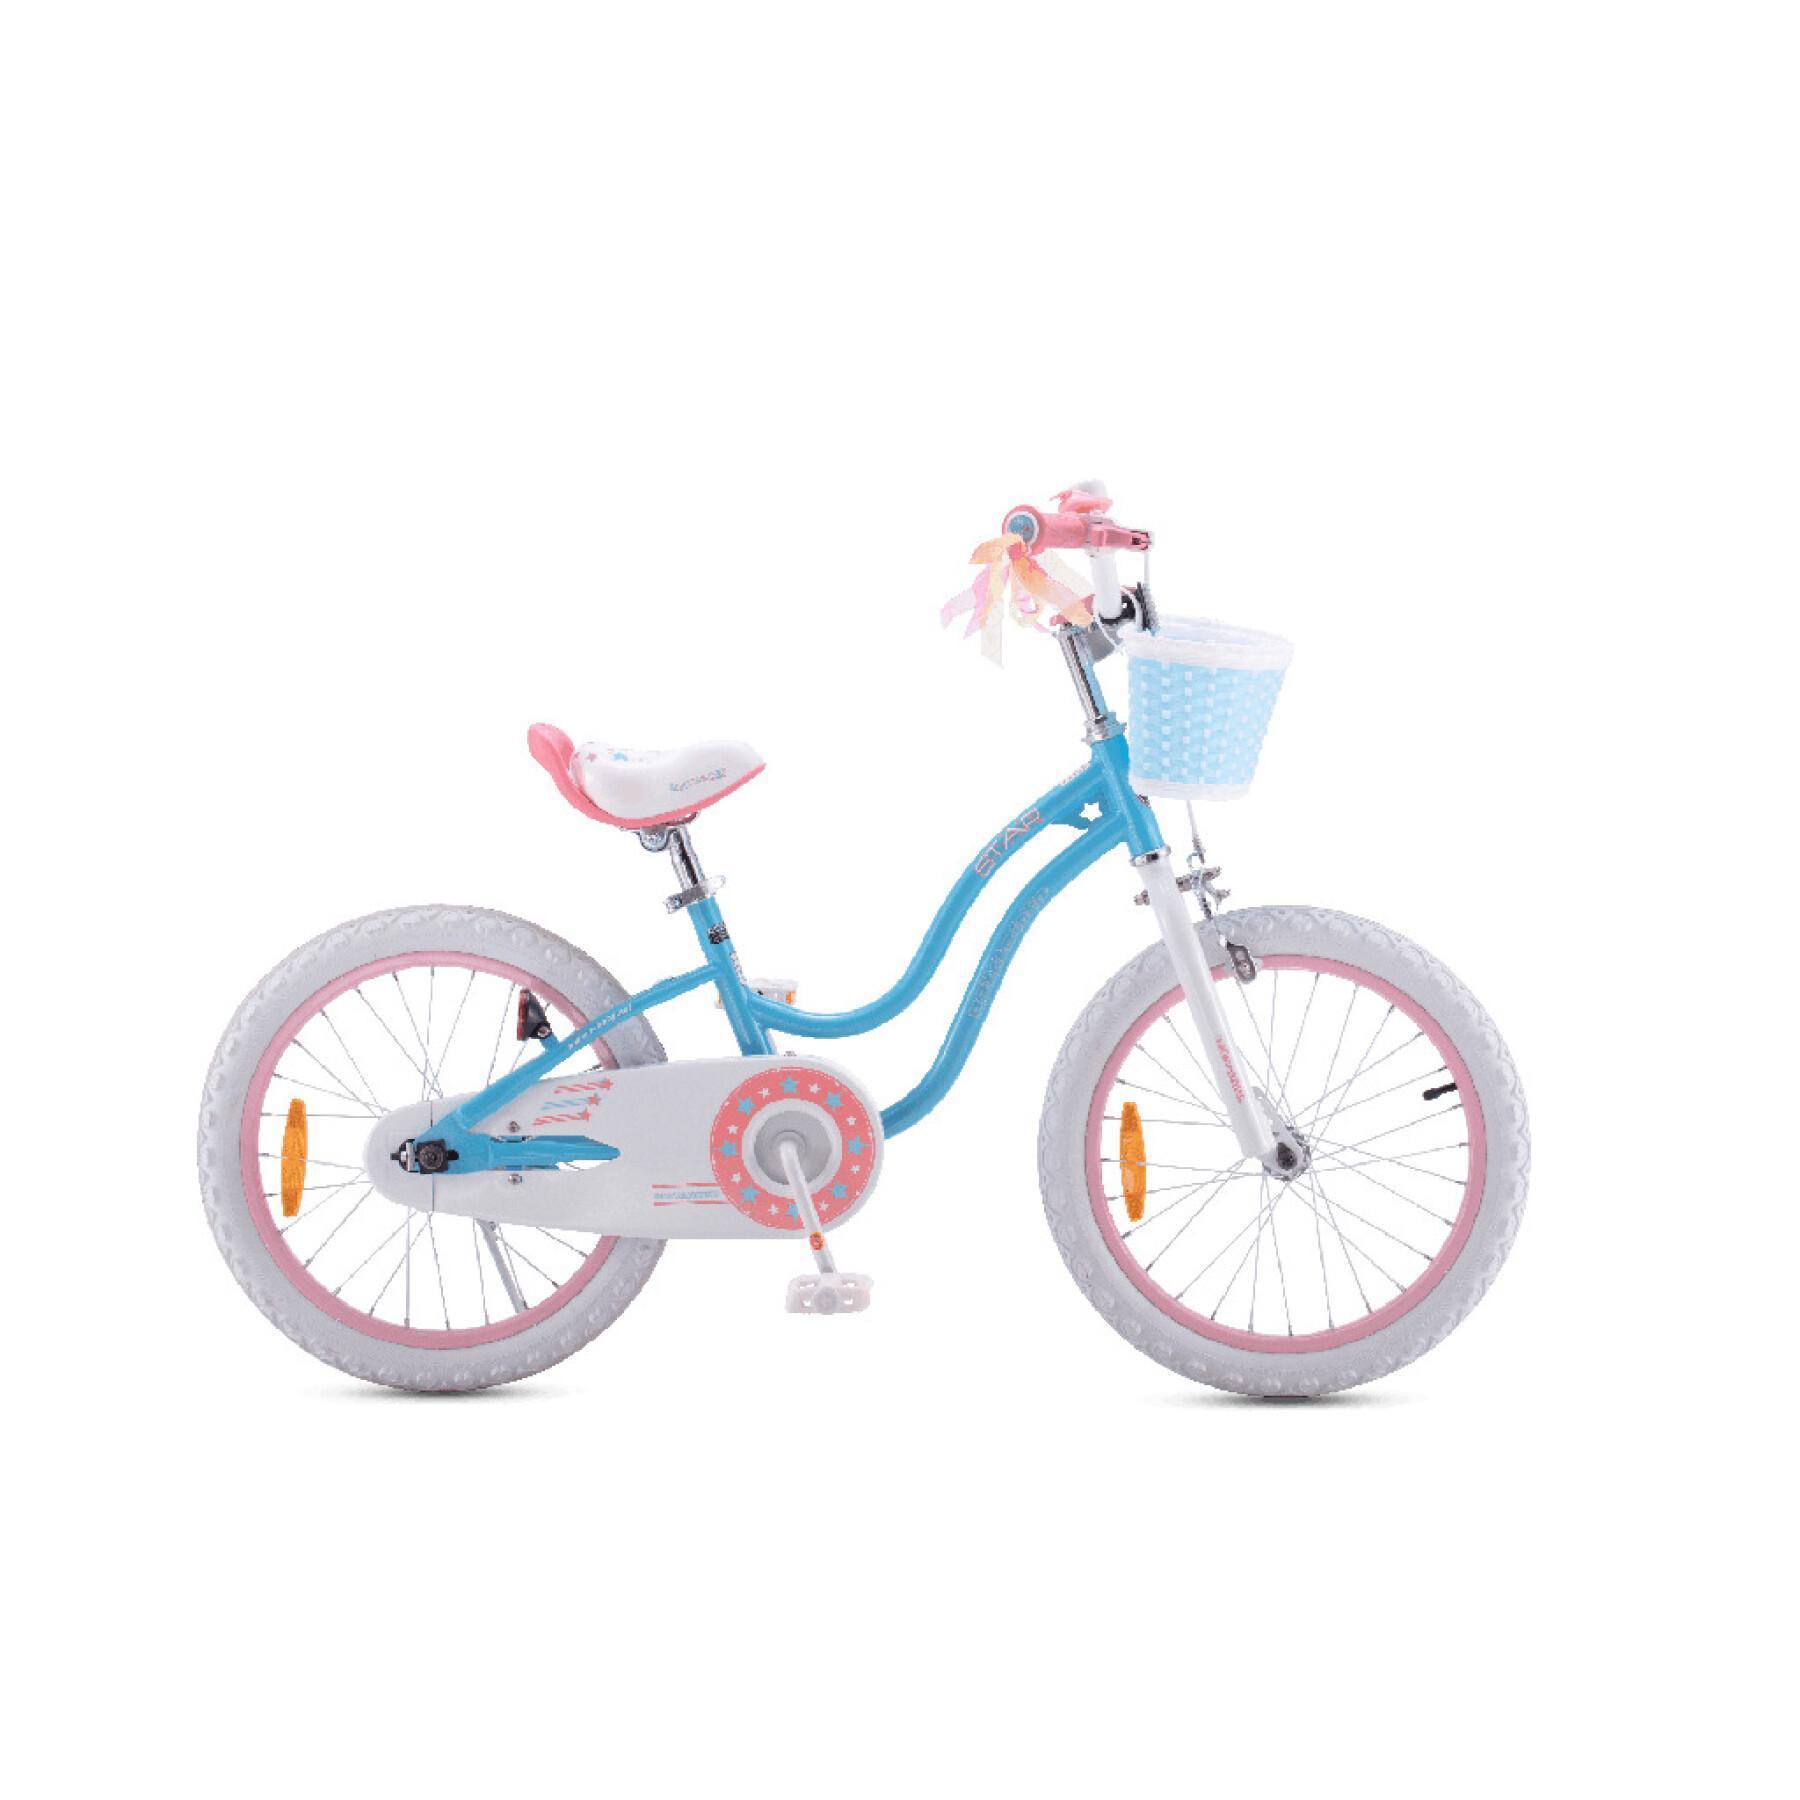 Bicicleta para crianças RoyalBaby Star 16